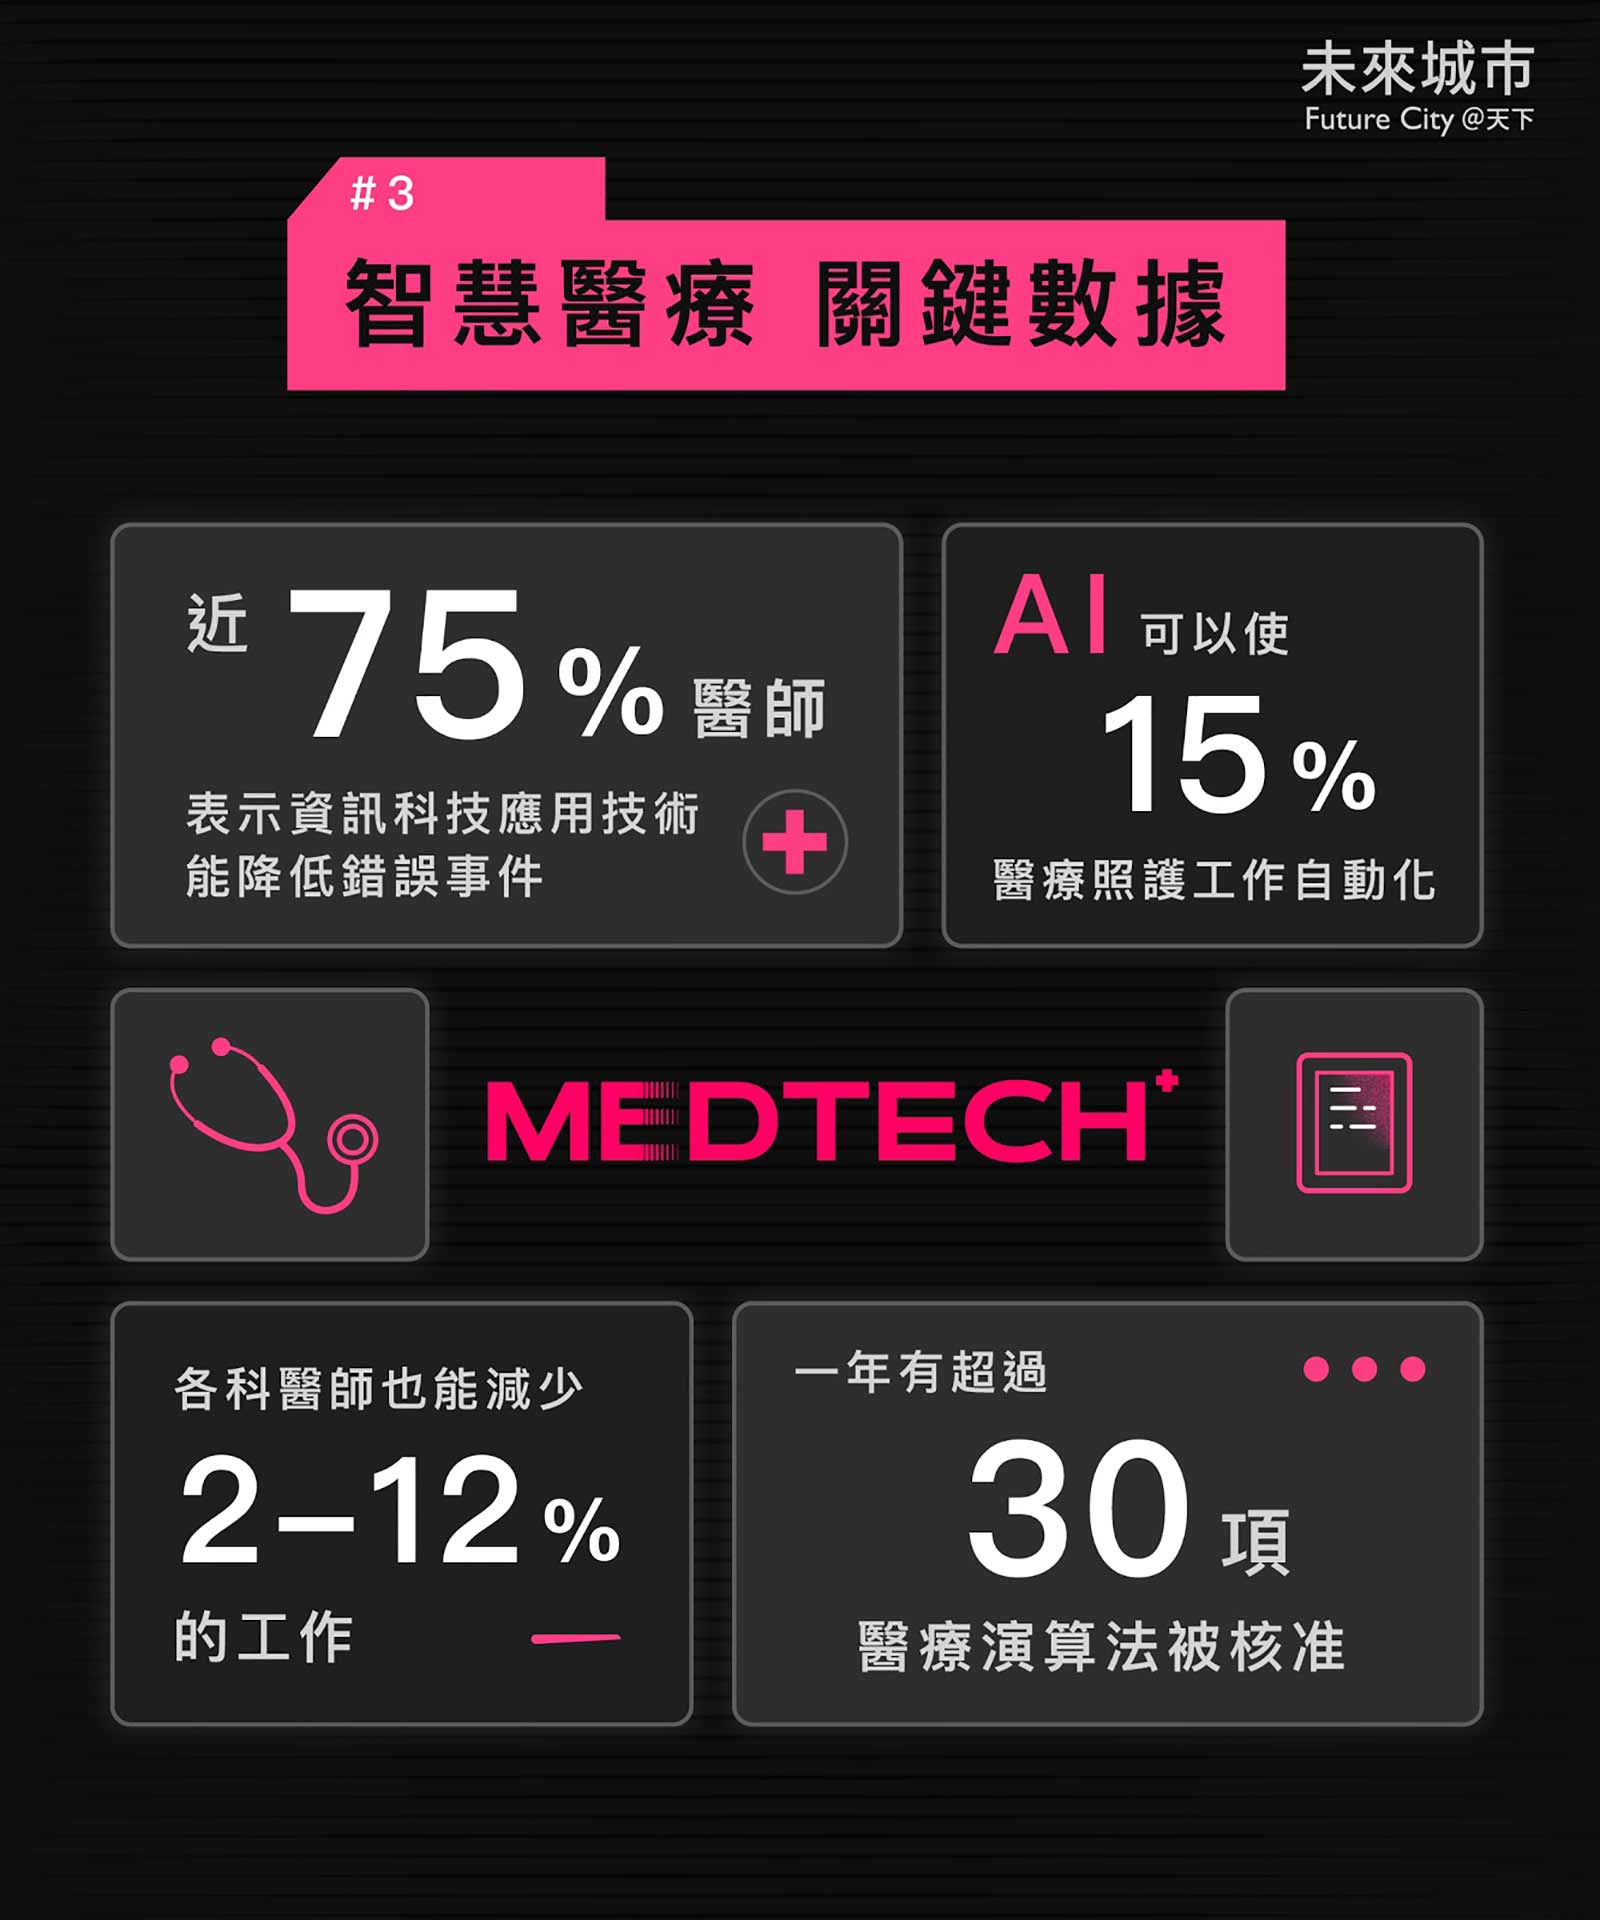 智慧醫療-AI醫療-數位醫療-區塊鏈-人工智慧-科技業-大數據-5G-高偉倫-吳培弘